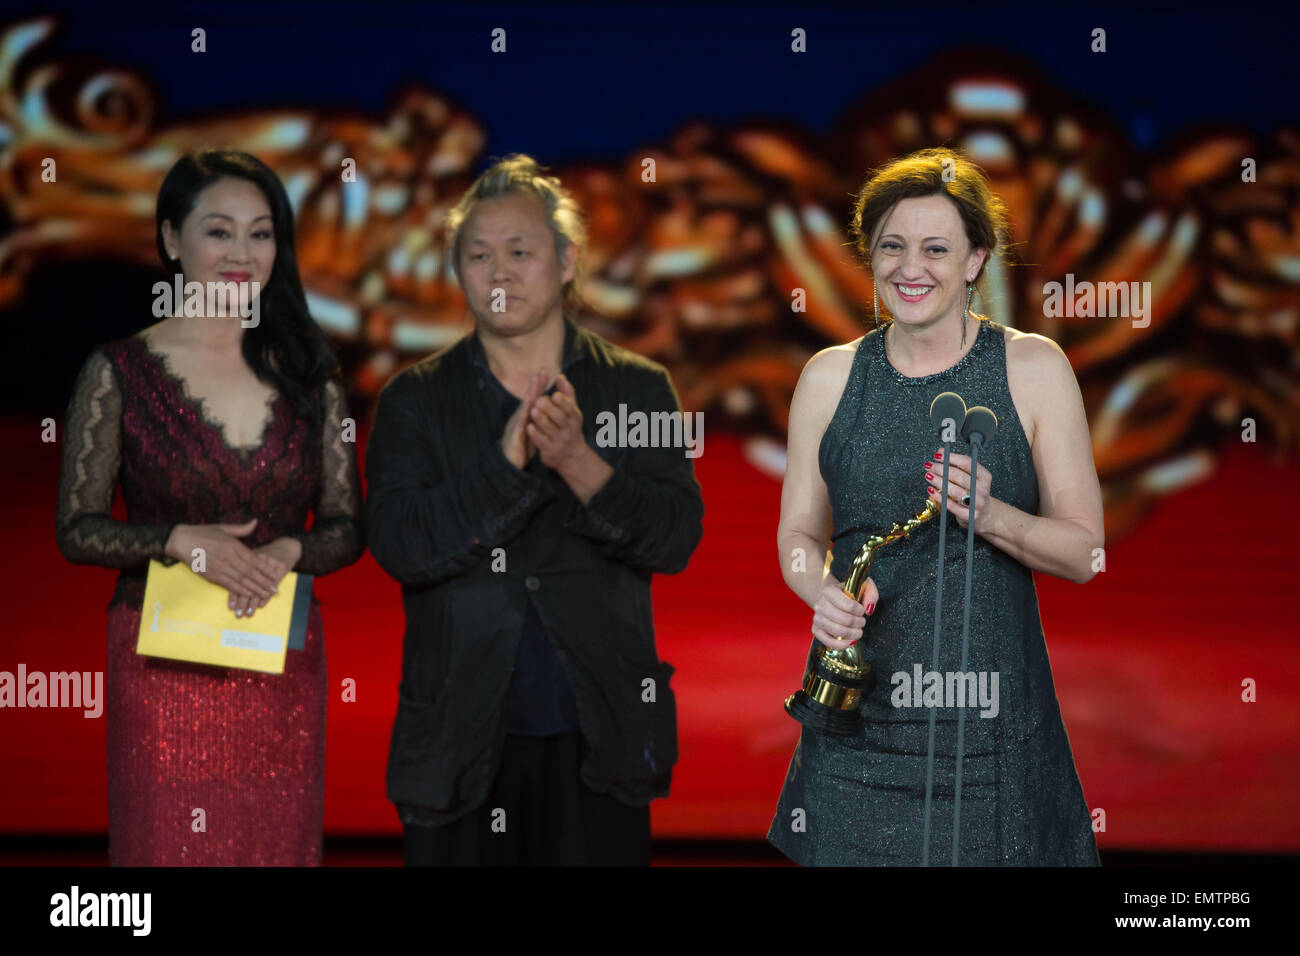 (150423)--Peking, 23. April 2015 (Xinhua)--Schauspielerin des Films "Kinder" Eva Bandor (R) erhält den Tiantan-Award als beste Nebendarstellerin während der Verleihung des Tiantan Award von der fünften Beijing International Film Festival (BJIFF) in Peking, Hauptstadt von China, 23. April 2015. (Xinhua/Chen Jianli) (mp) Stockfoto